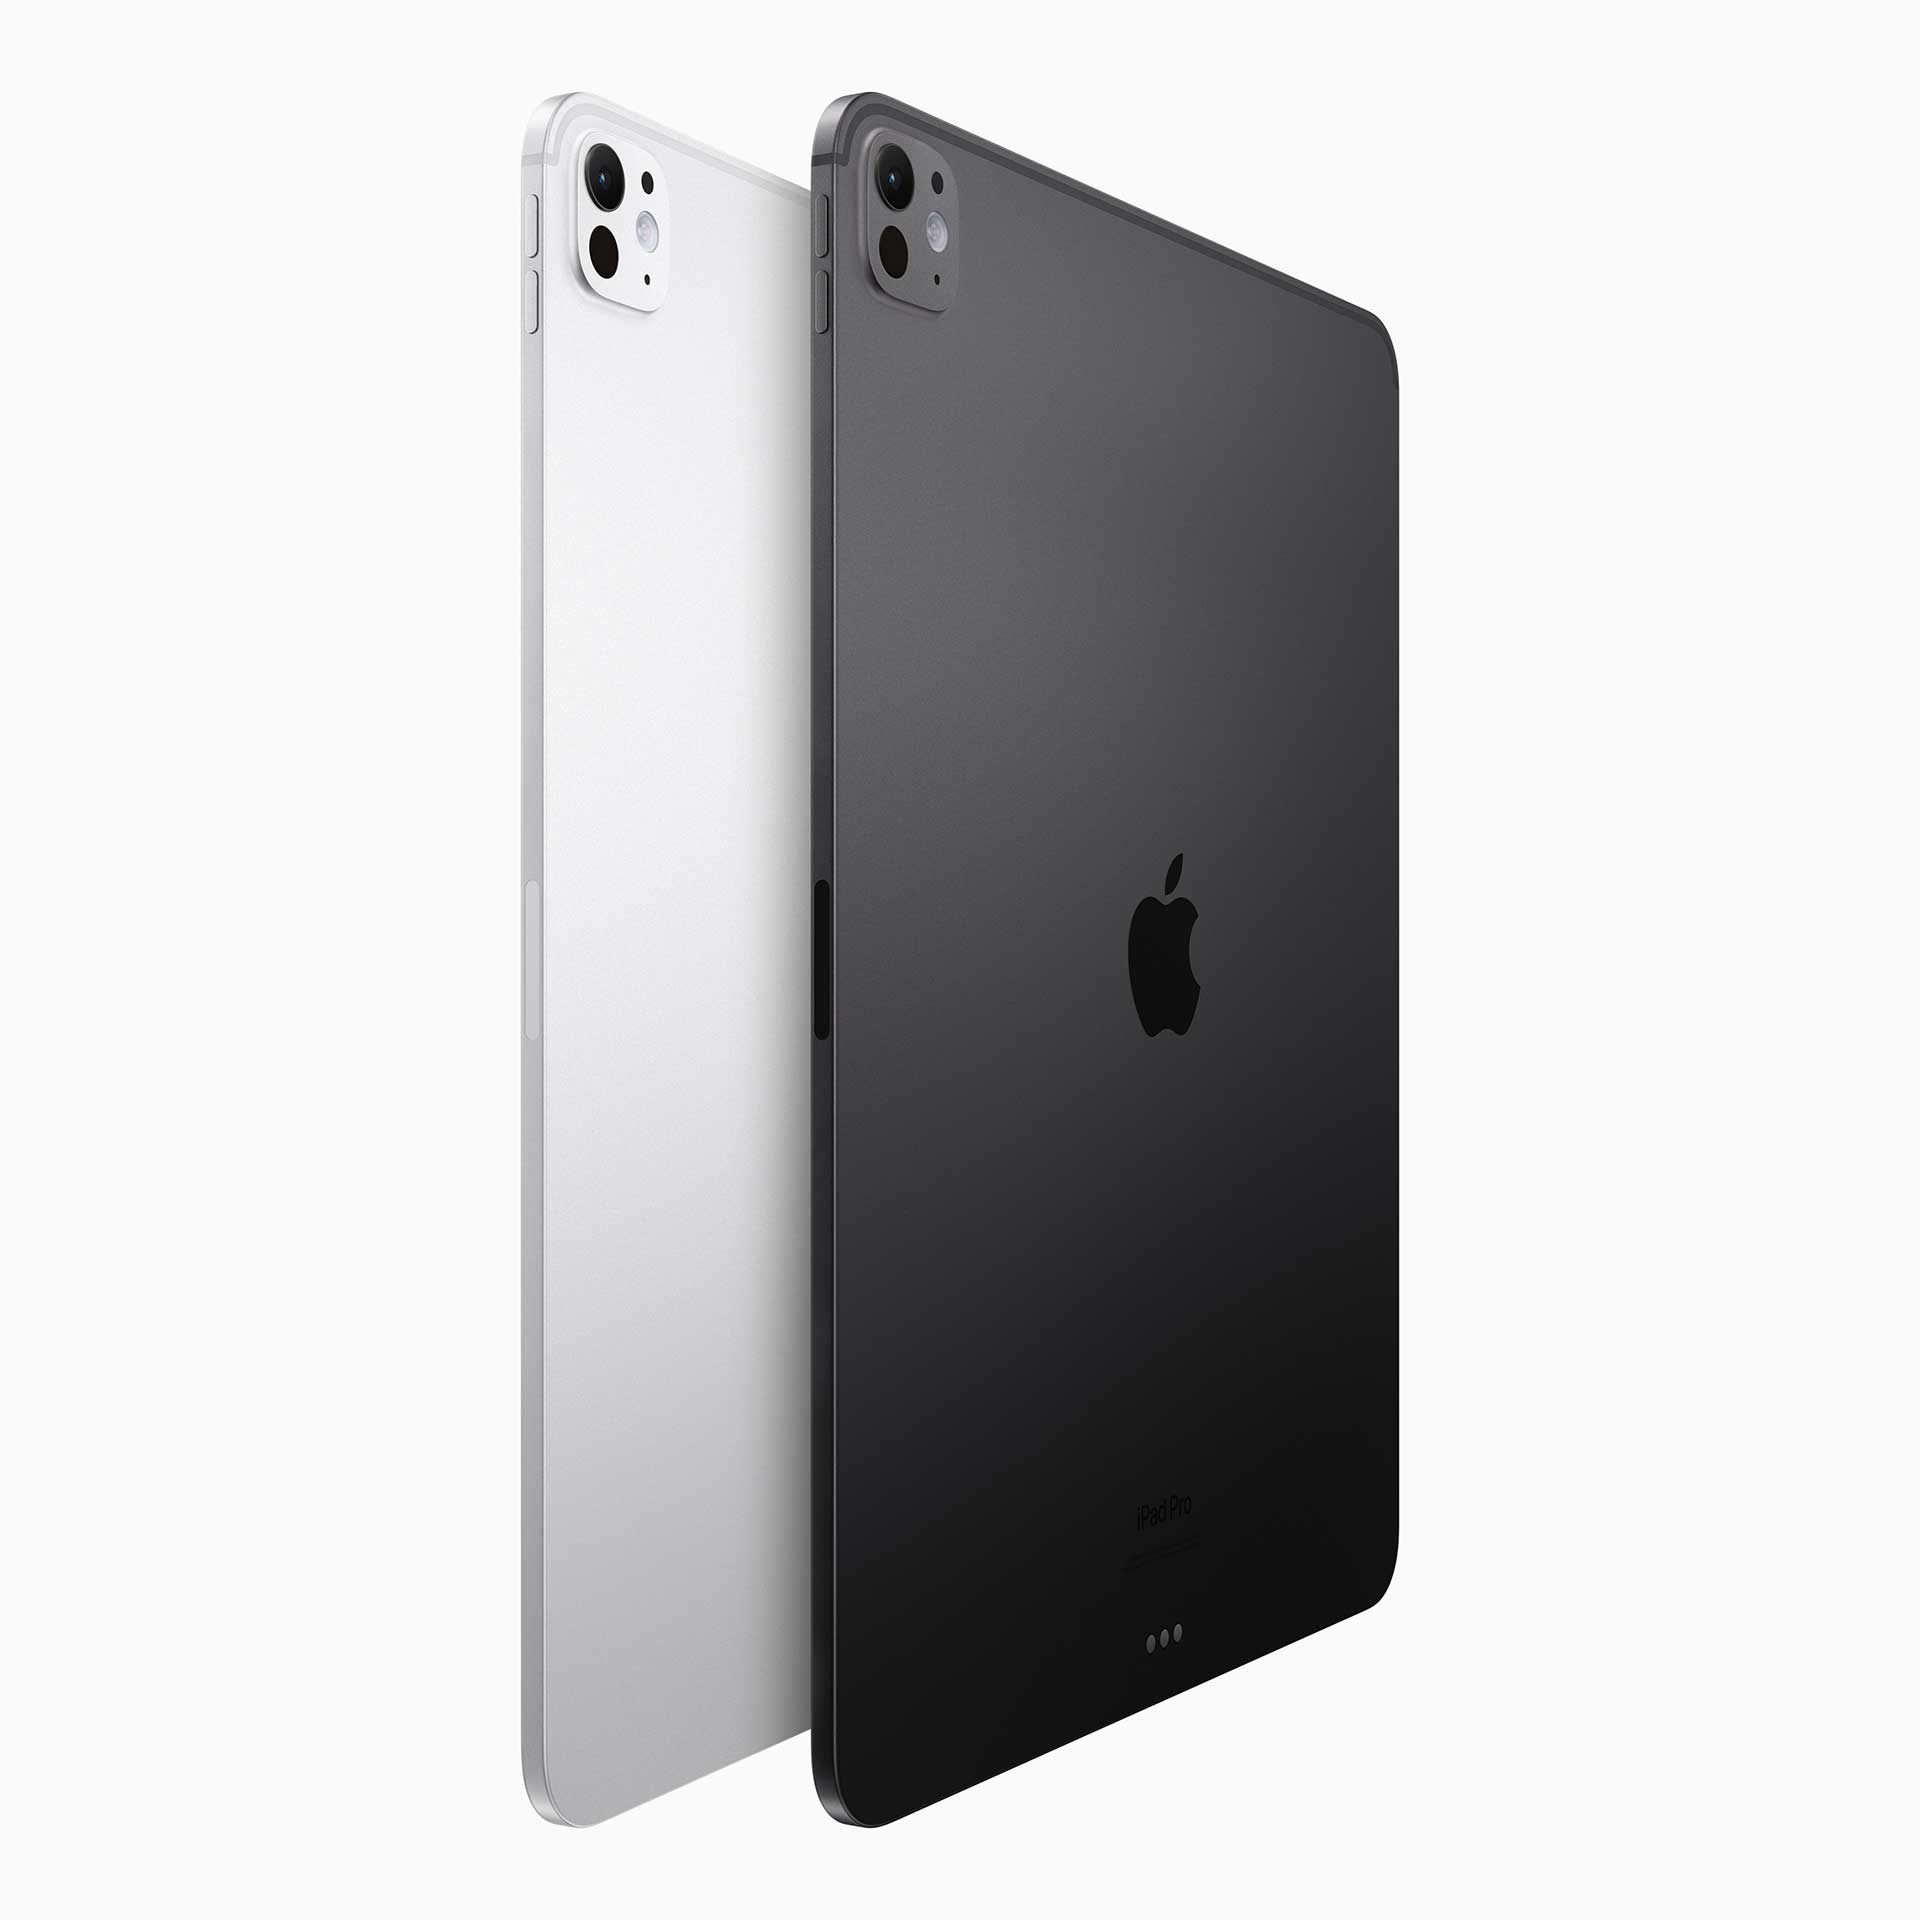 アップル、シリーズ初の有機EL「iPad Pro」。「史上最高に薄いアップル製品」 - AV Watch